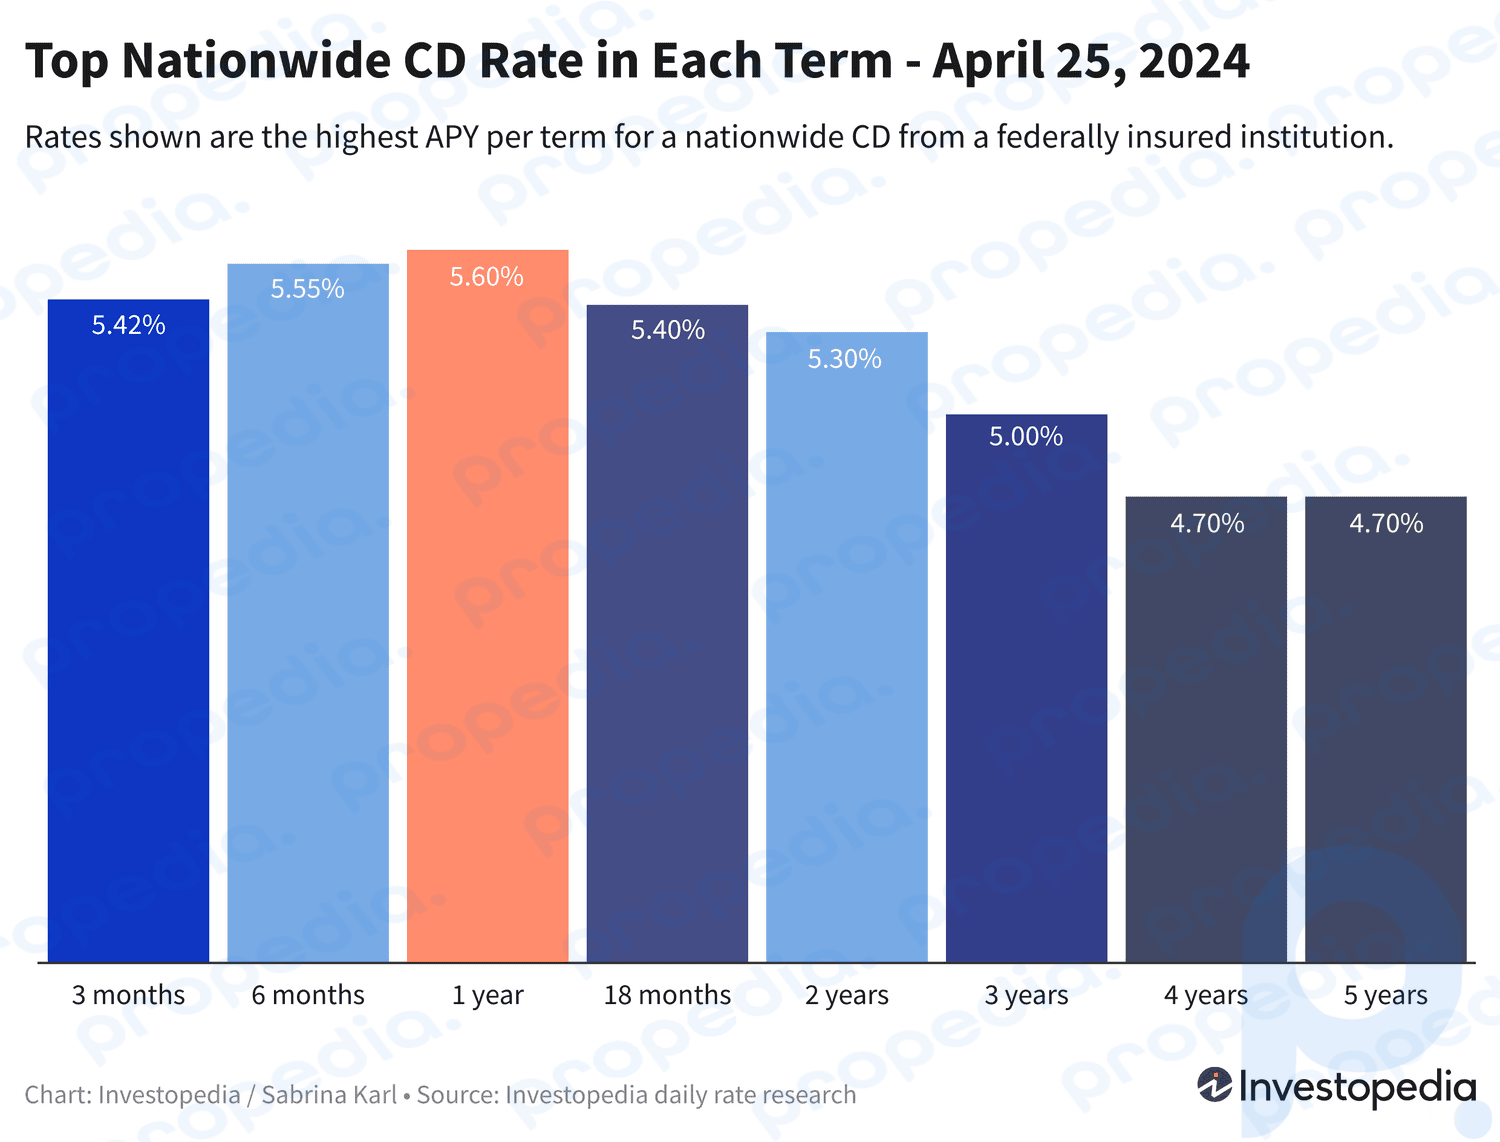 Tasa máxima disponible a nivel nacional en cada plazo de CD, que oscila entre 4,70% y 5,60%, vigente al 25 de abril de 2024.